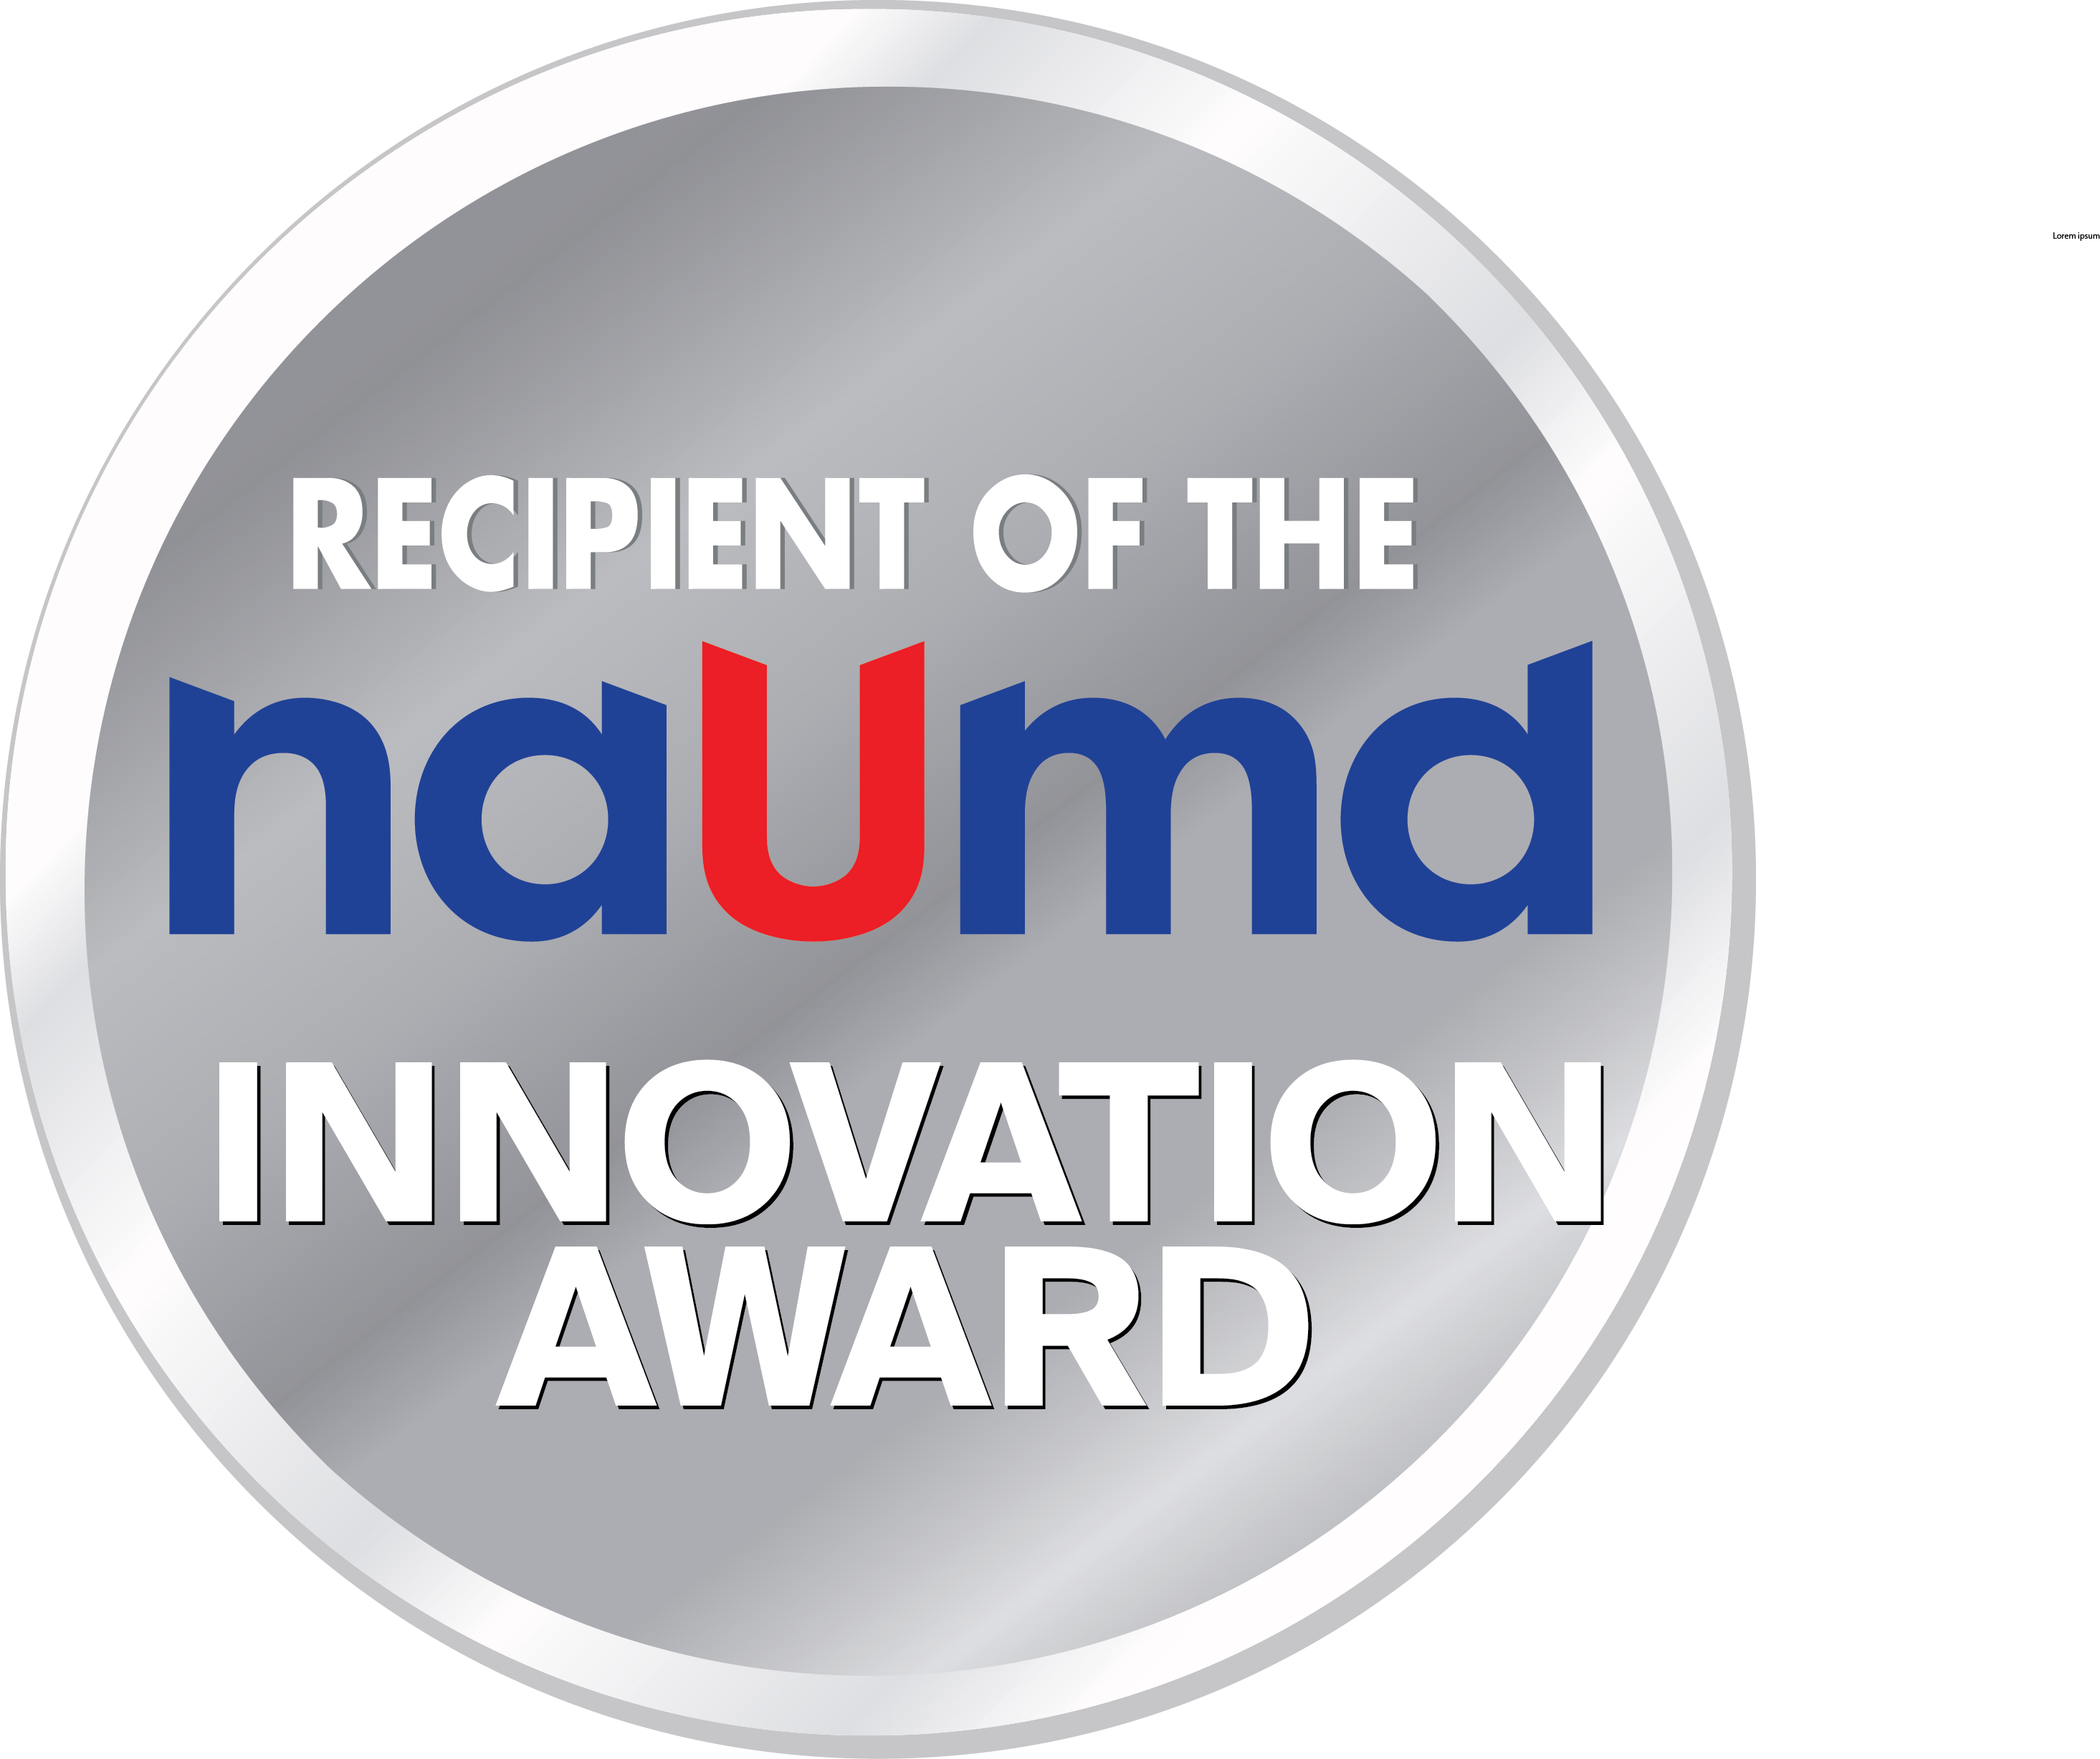 NAUMD Innovation Award Winner